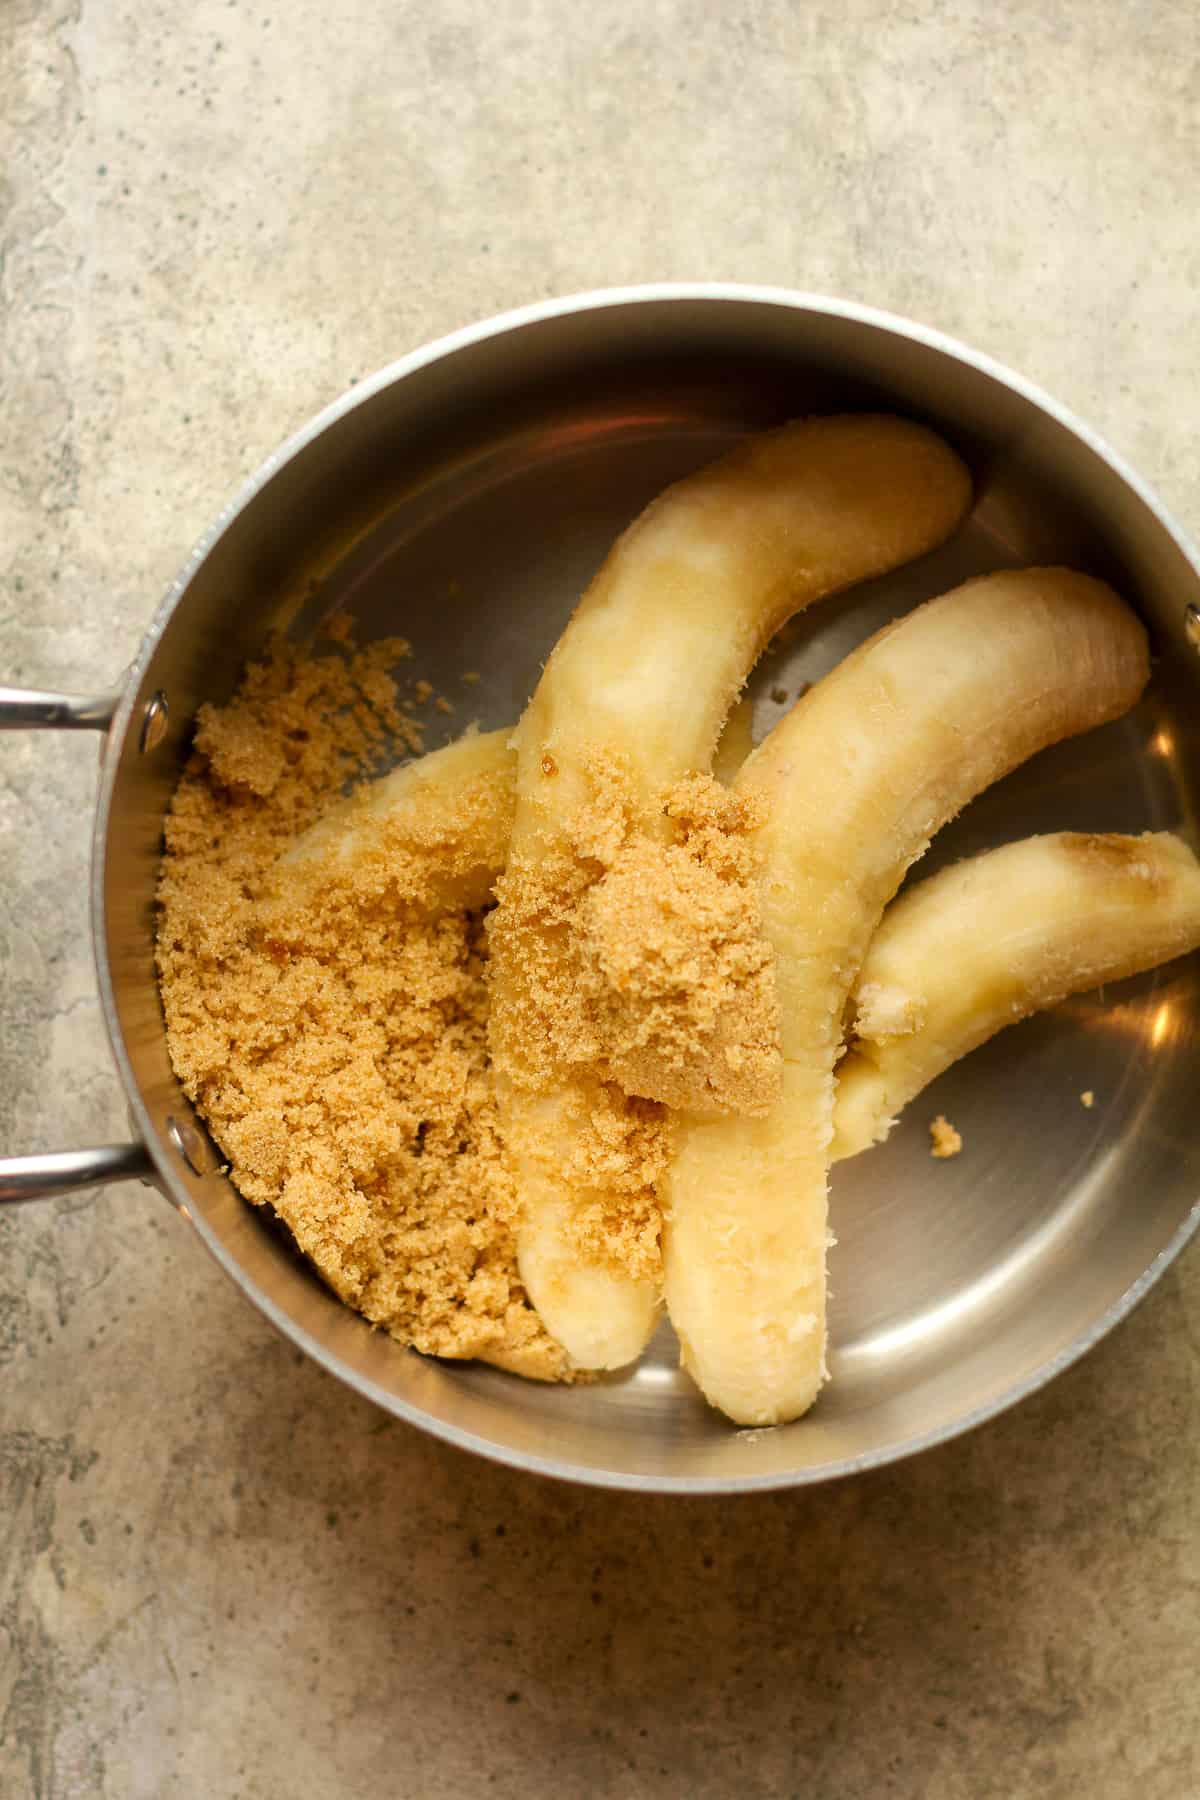 The ripe bananas plus brown sugar in a pan.